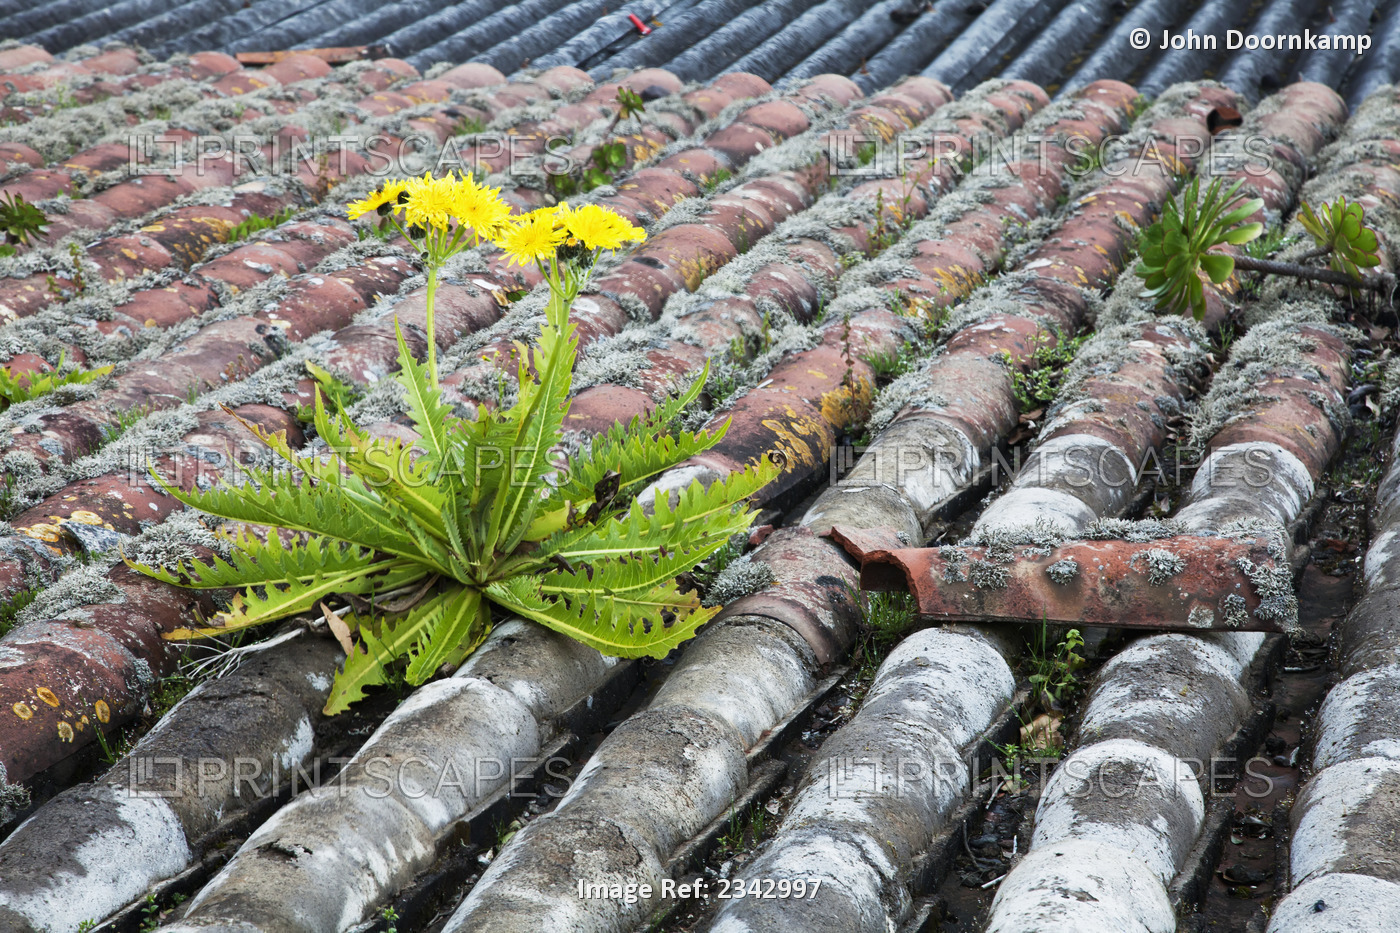 Dandelion on tiled roof; Portugal